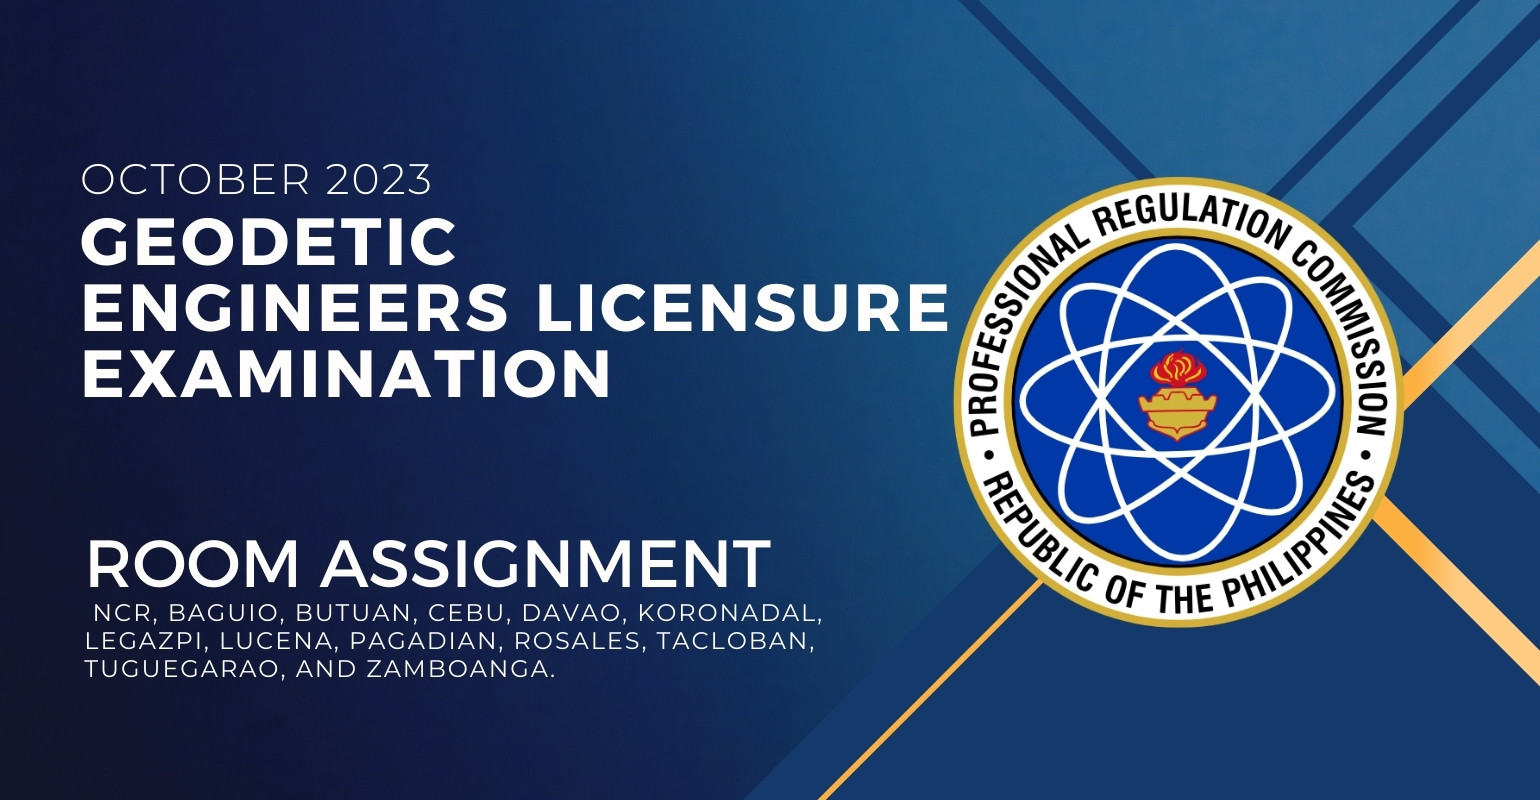 room assignment october 2023 geodetic engineers licensure exam 1